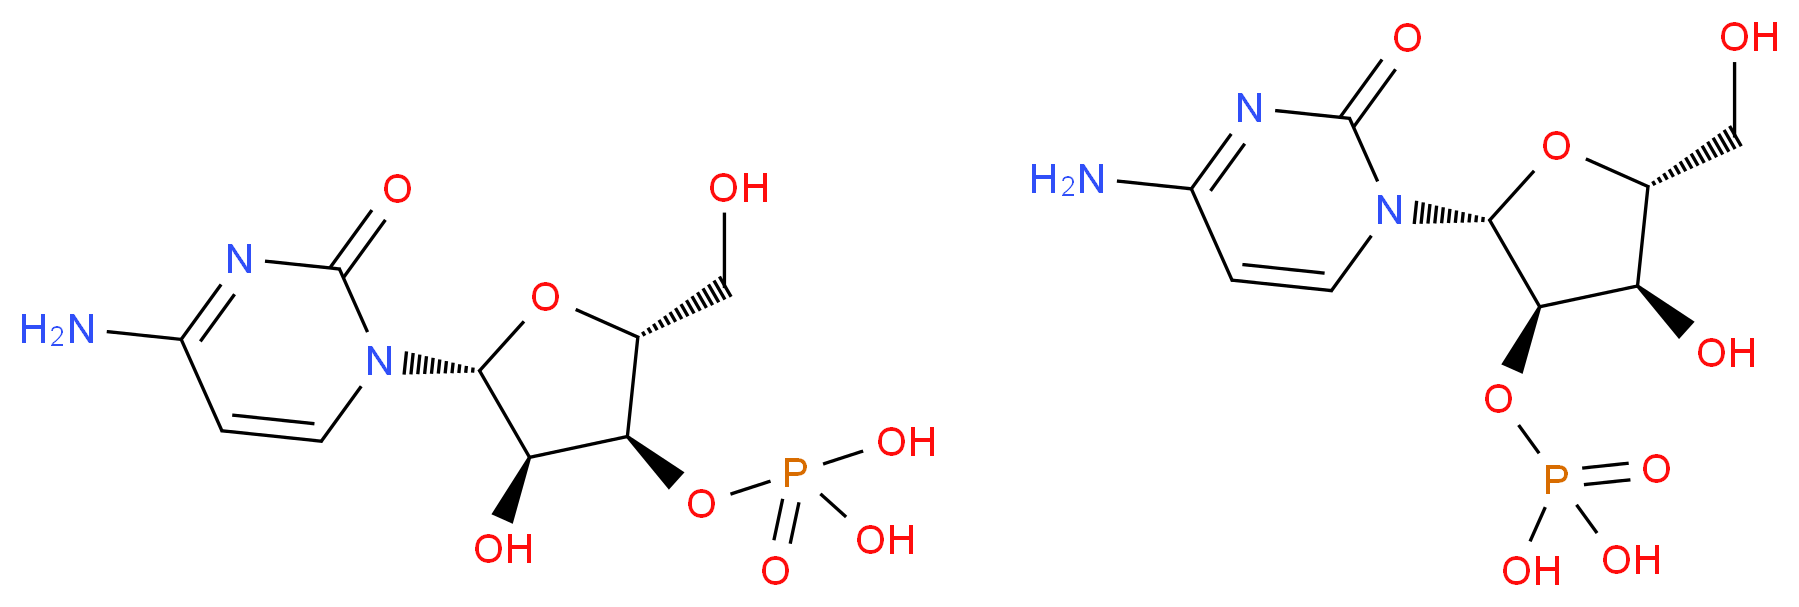 27214-06-8 molecular structure